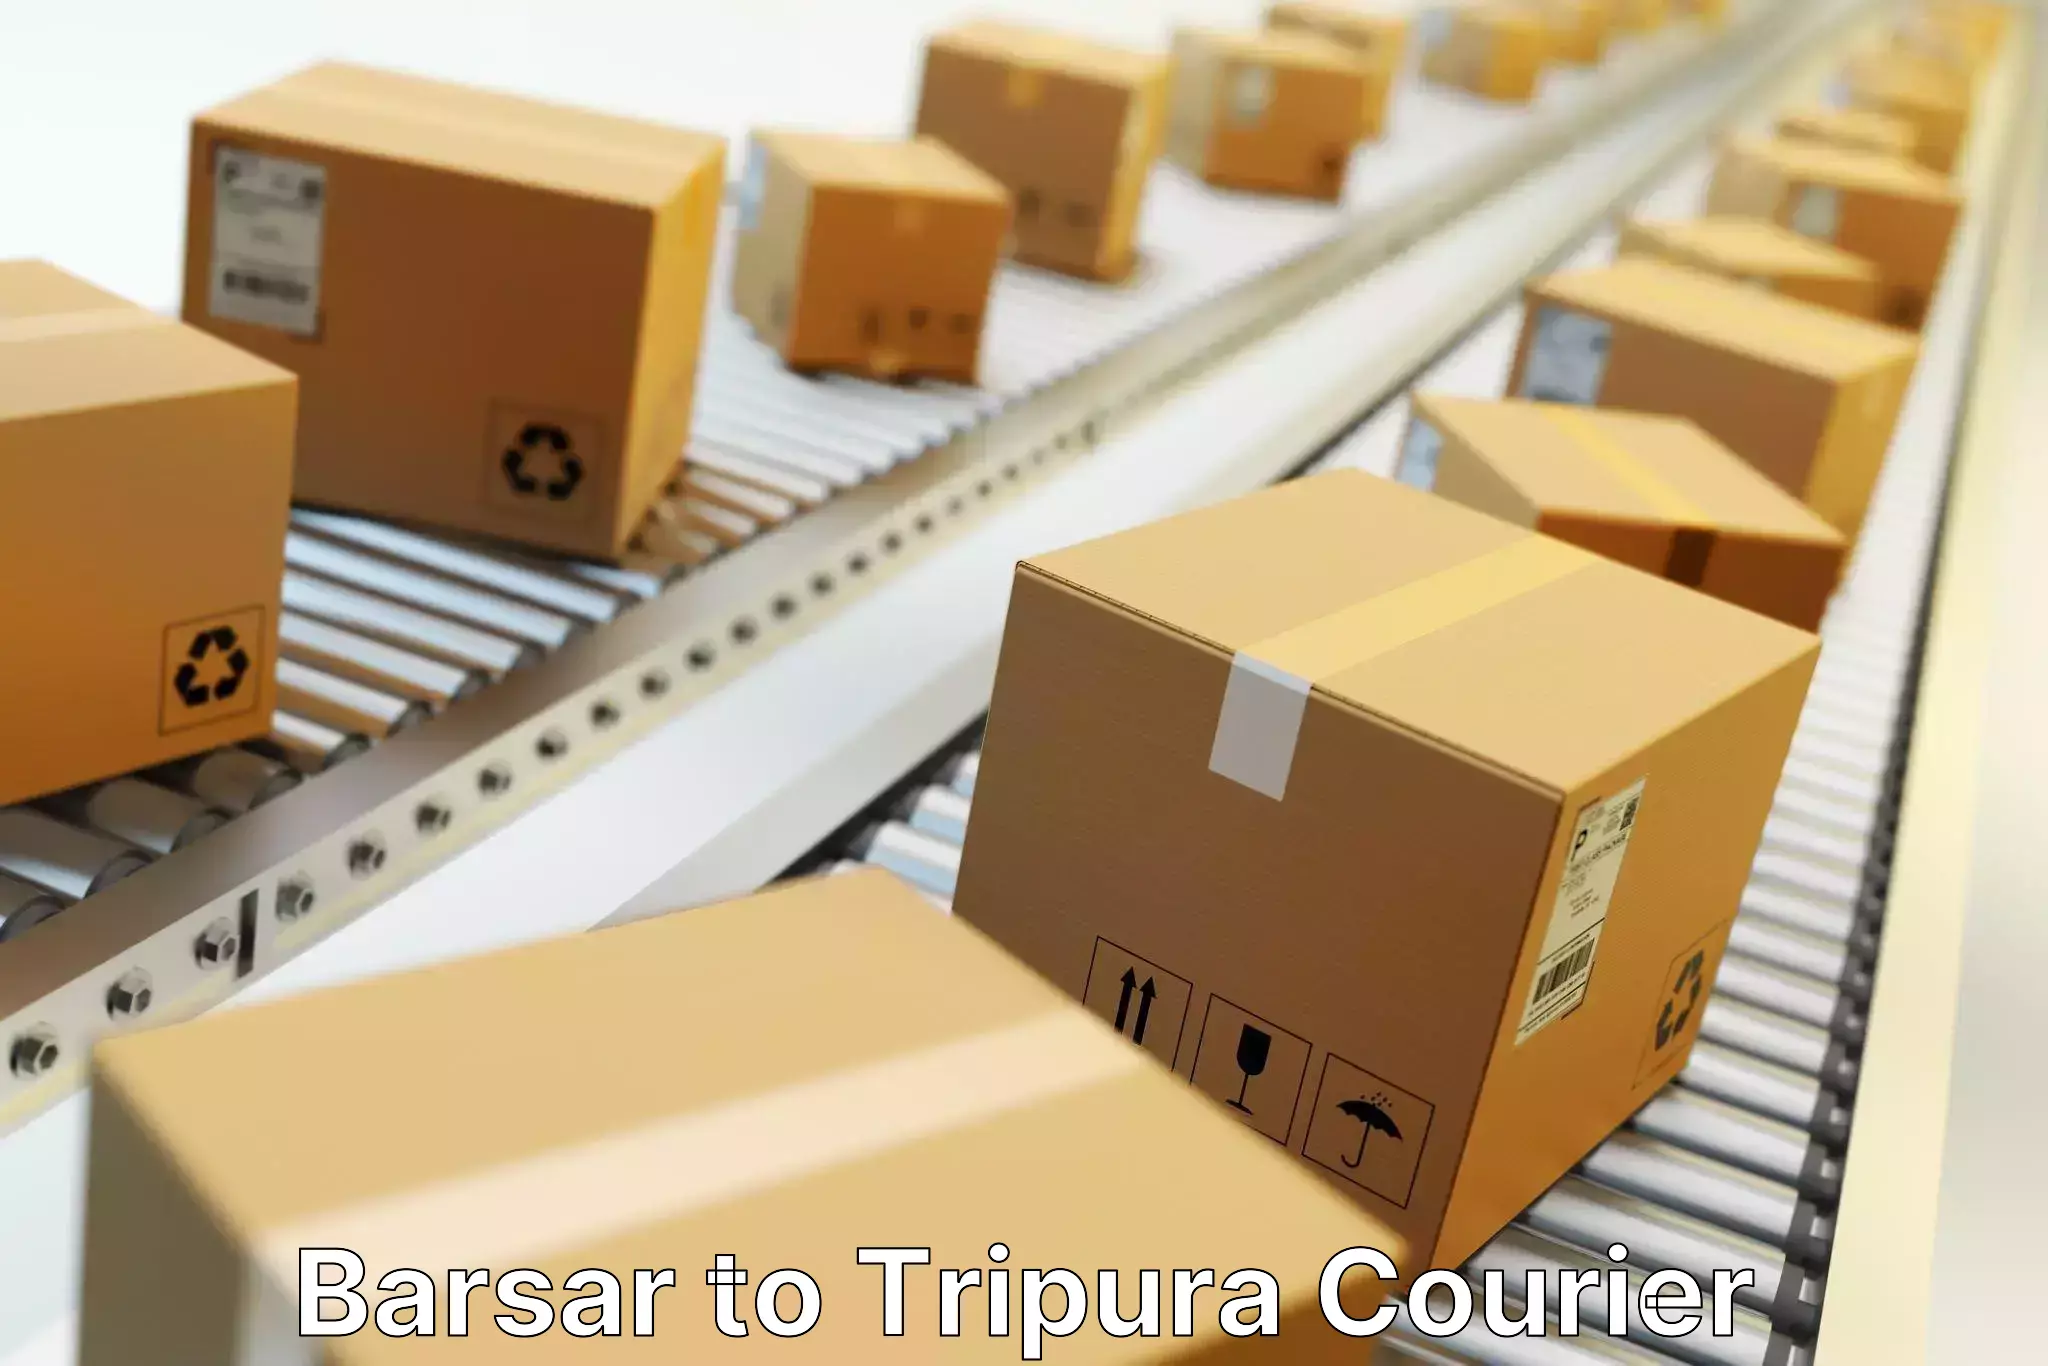 Online shipping calculator Barsar to IIIT Agartala